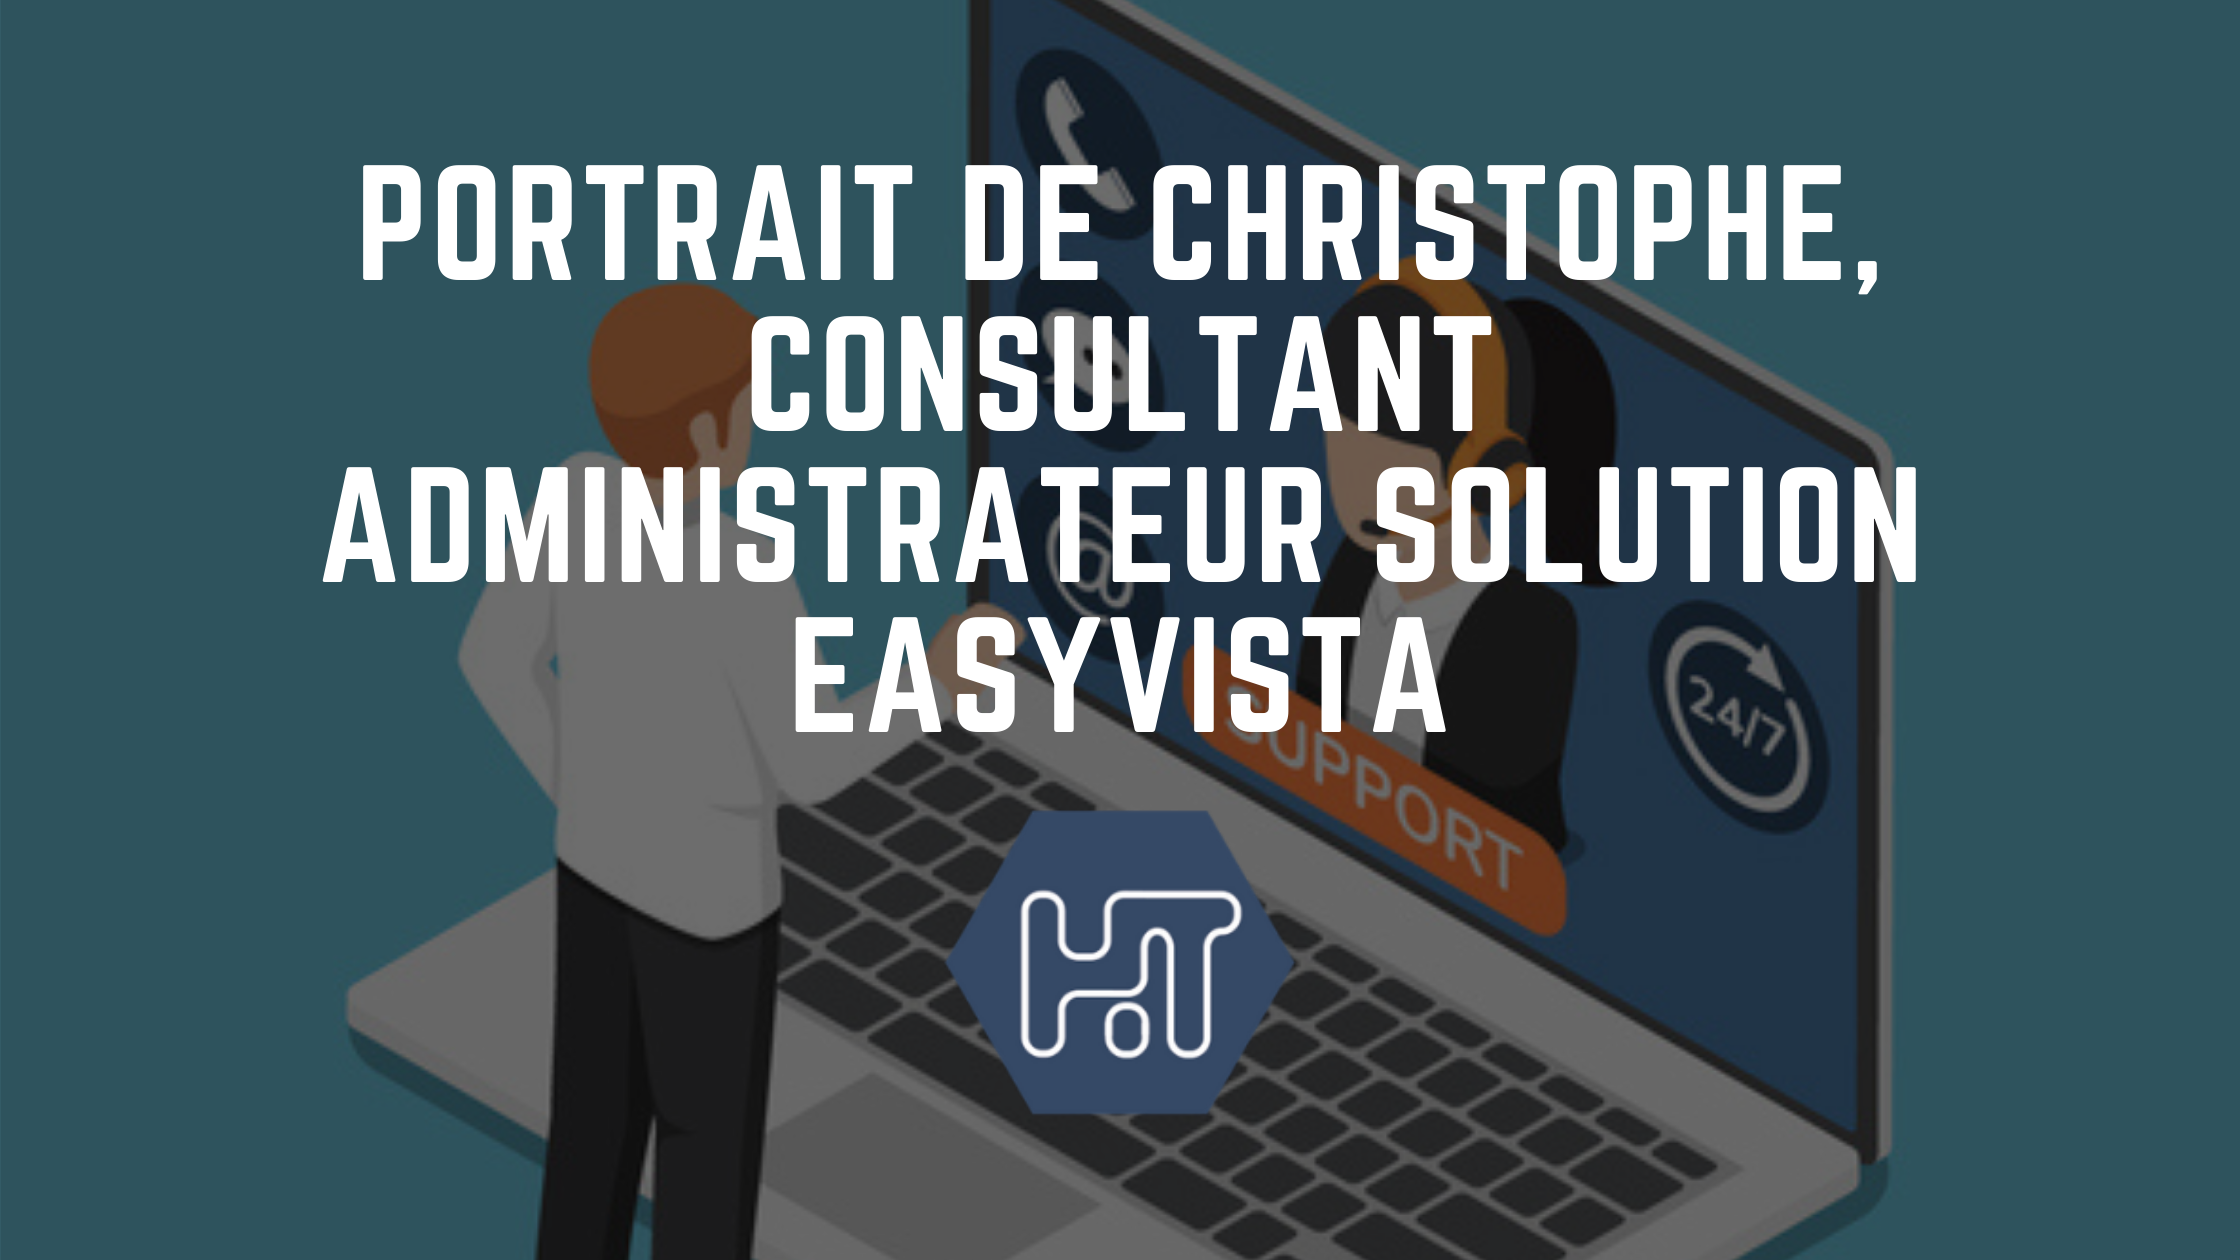 Portrait de Christophe, Consultant Administrateur Solution EasyVista, en mission chez EDF Renouvelables